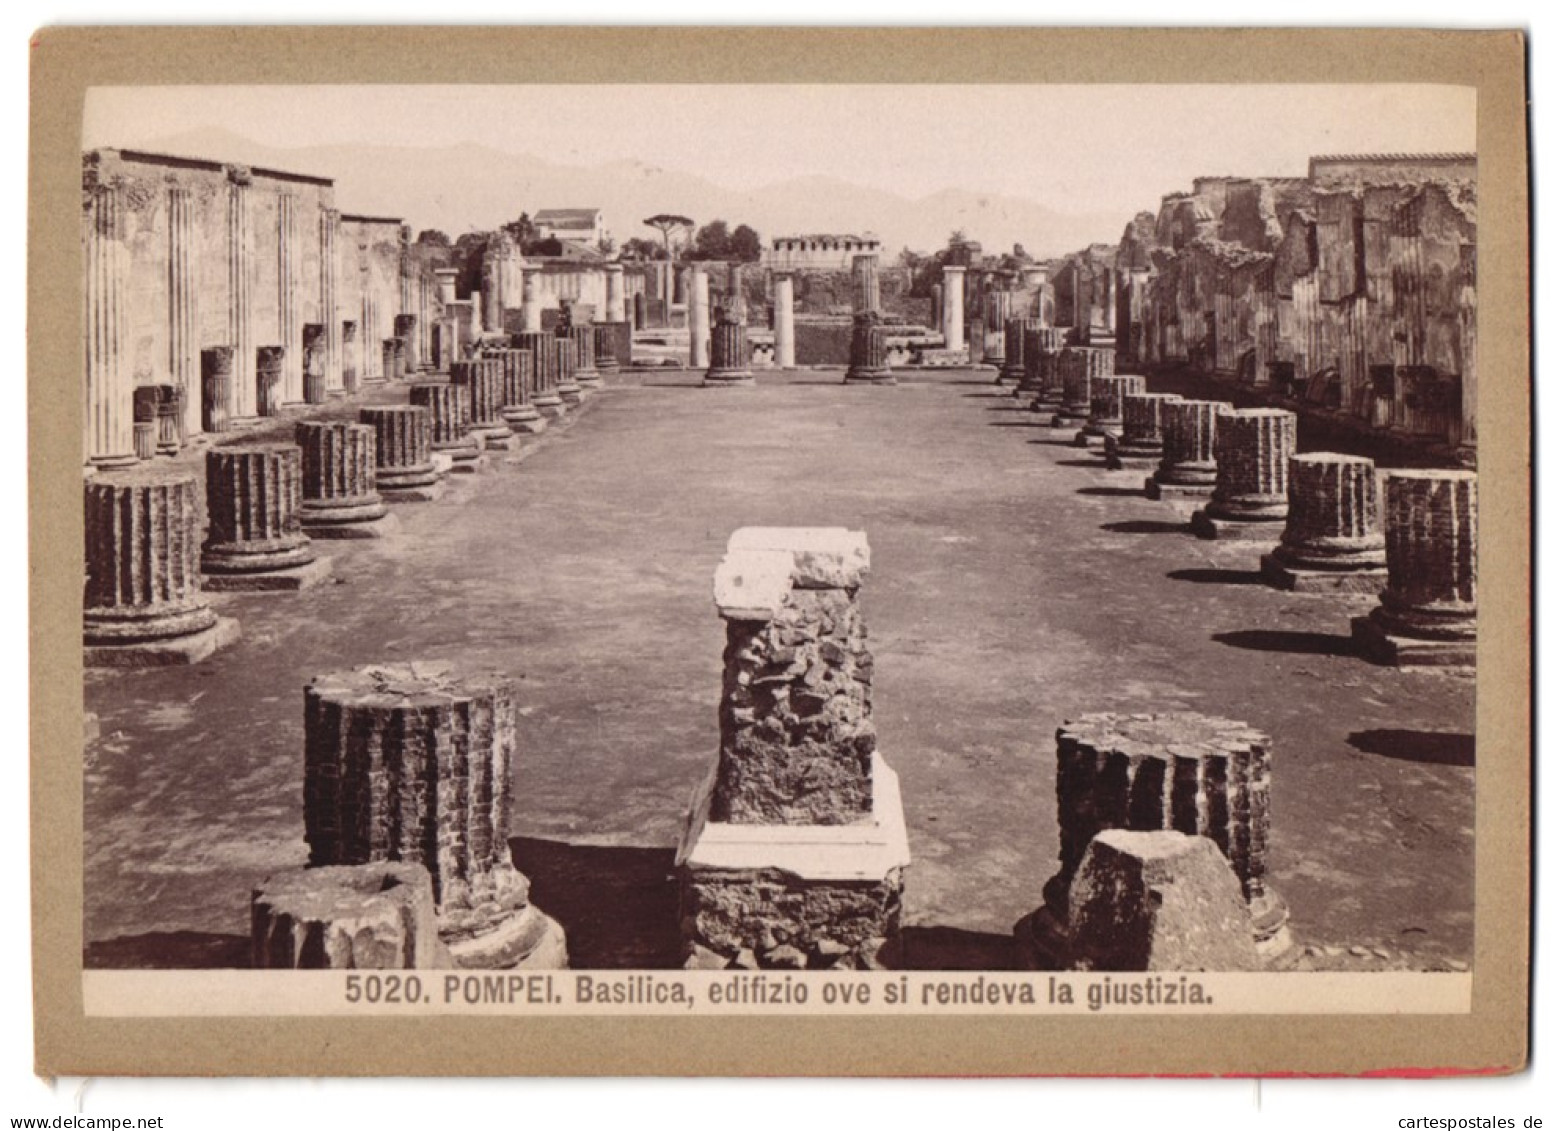 Foto Giacomo Brogi, Florence-Naples, Ansicht Pompei - Pompeji, Basilica, Edifizio Ove Si Rendeva La Giustizia  - Places